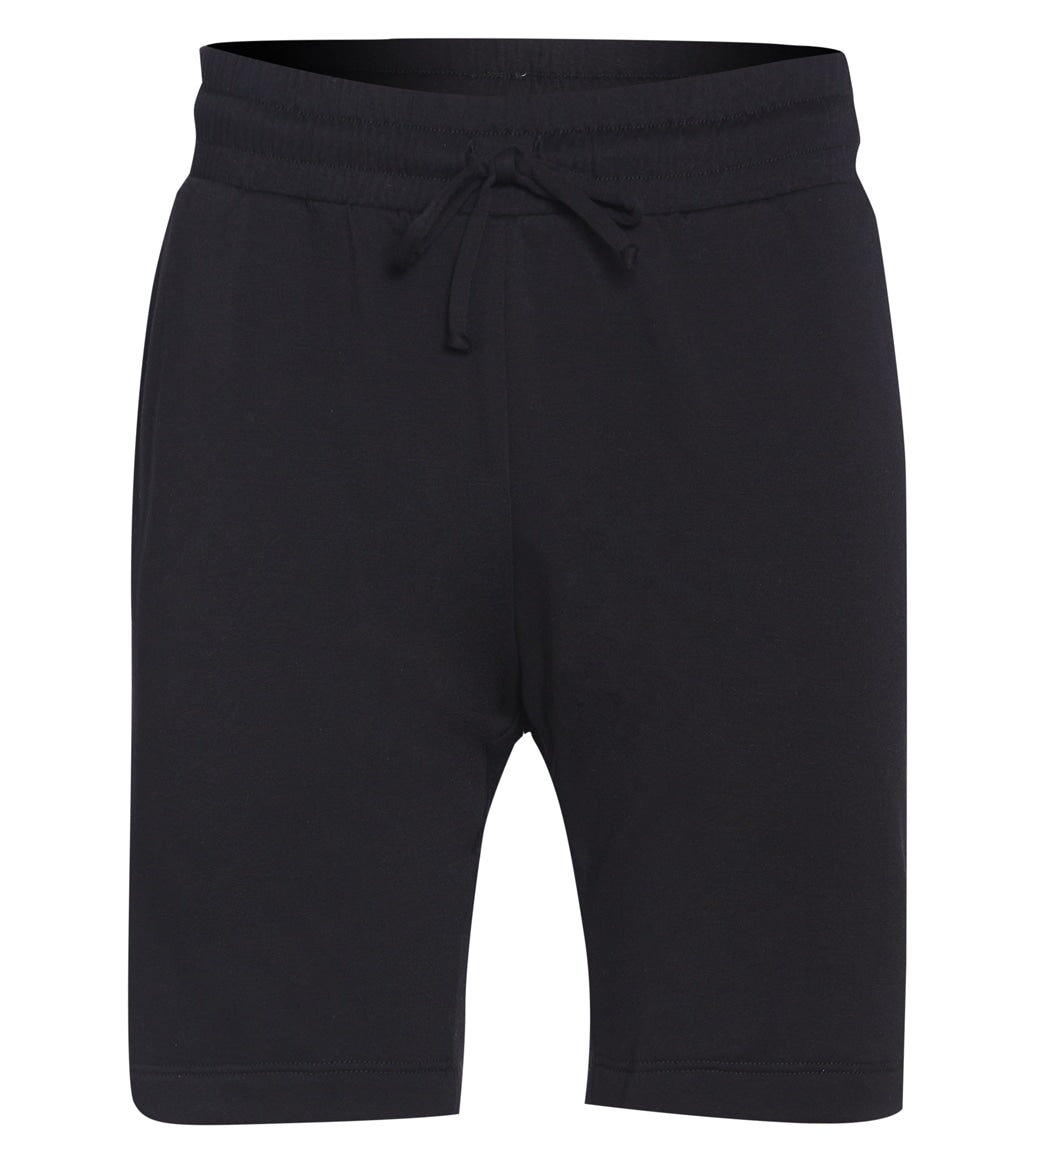 Onzie Men's 9-inch Sweat Short - Black Fleece - Spandex